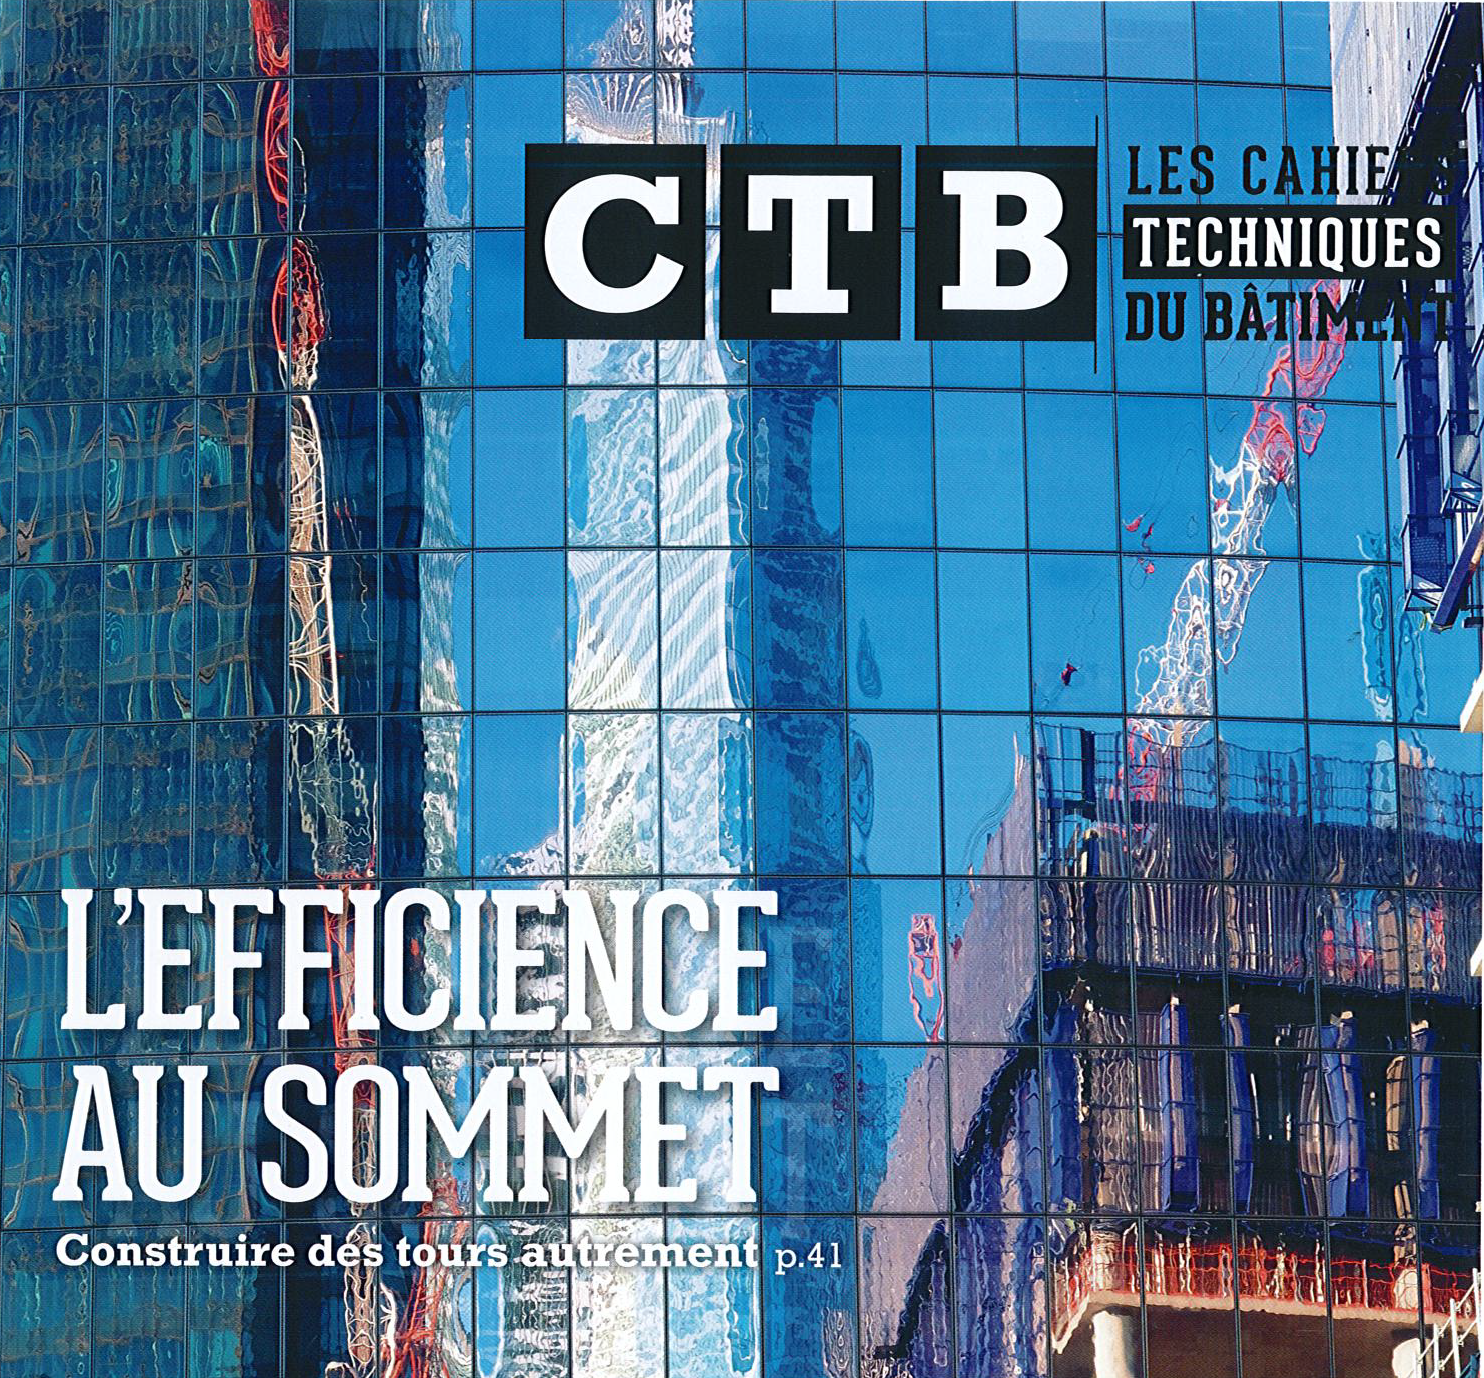 CTB / Construire des tours autrement - © Cro&Co